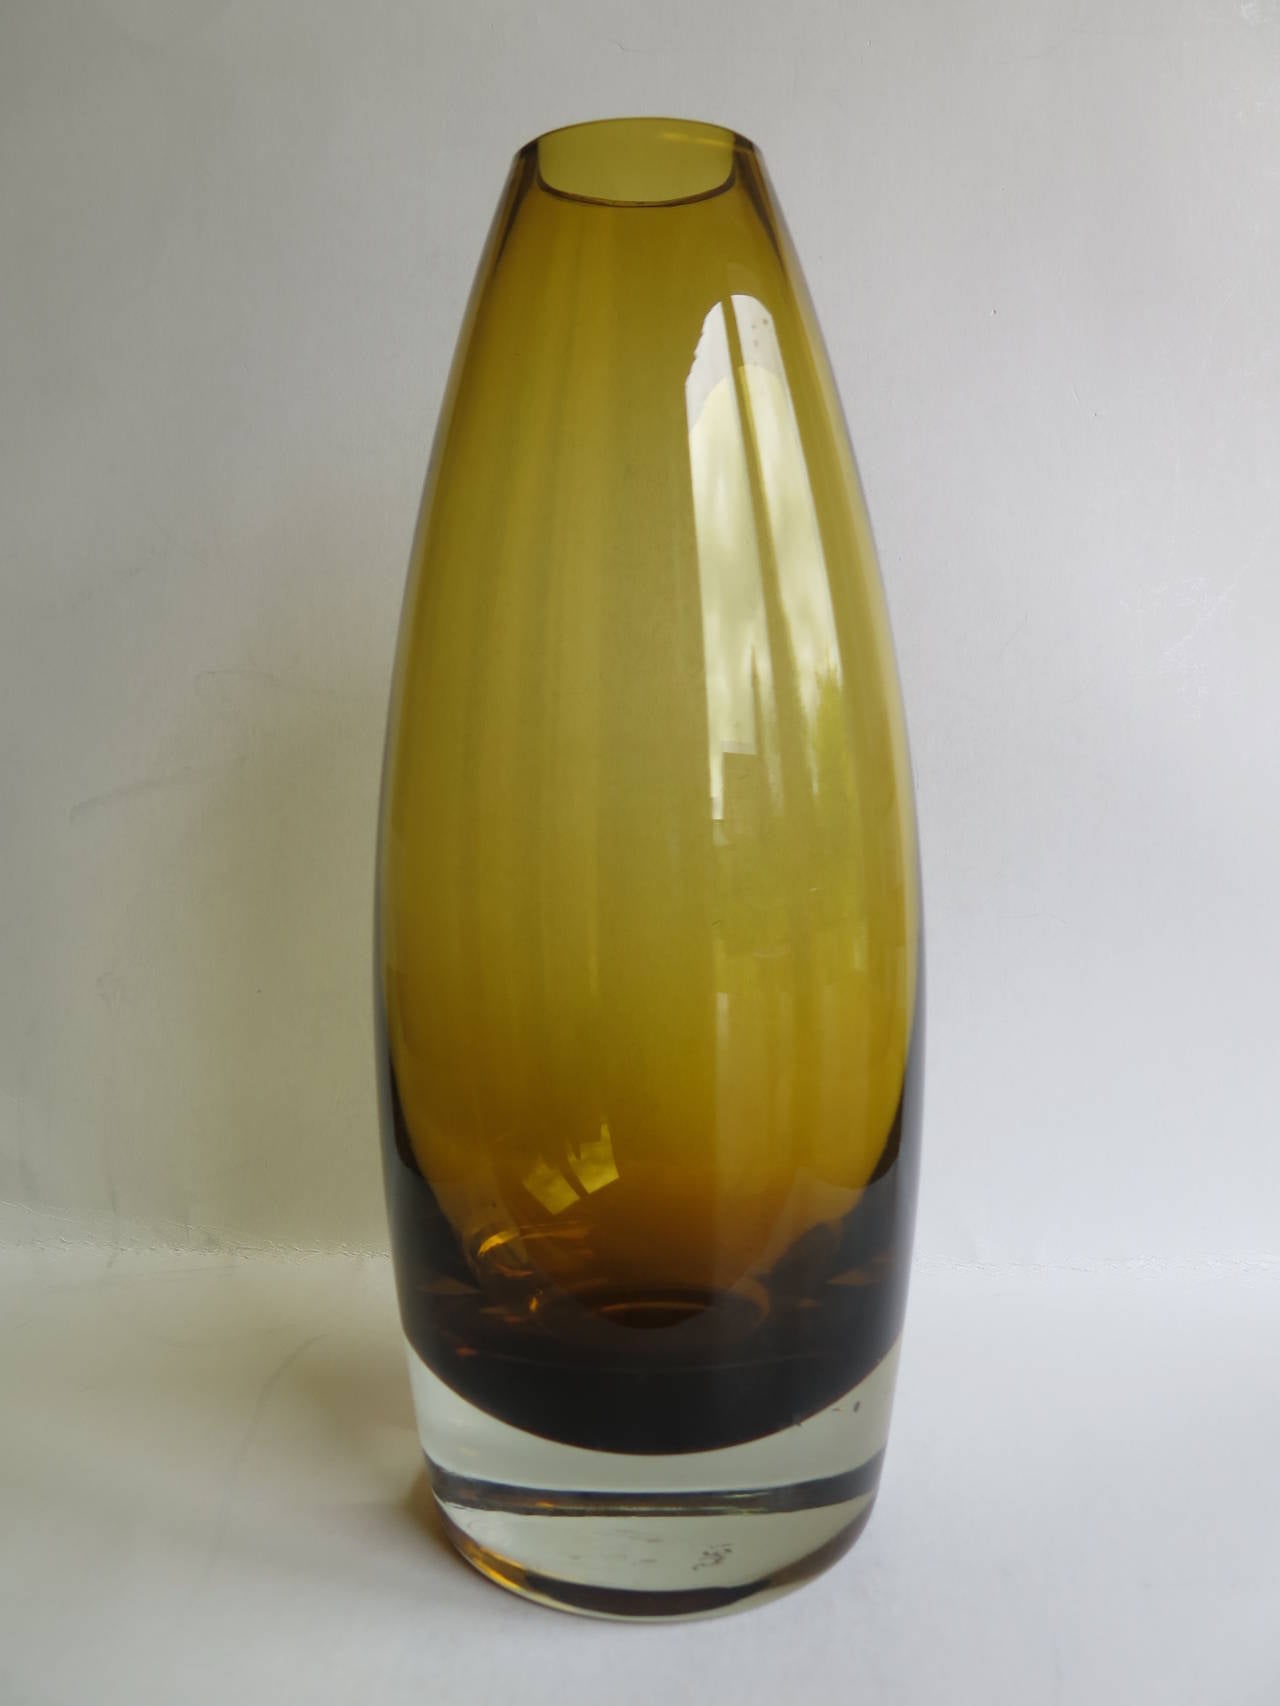 Dies ist eine skandinavisch-moderne Vase aus Kunstglas aus der Mitte des Jahrhunderts, die der Designerin Tamara Aladin für den finnischen Hersteller Riihimaen / Riihimaki Lasi Oy zugeschrieben wird.

Die Vase hat eine schöne zylindrische, spitz